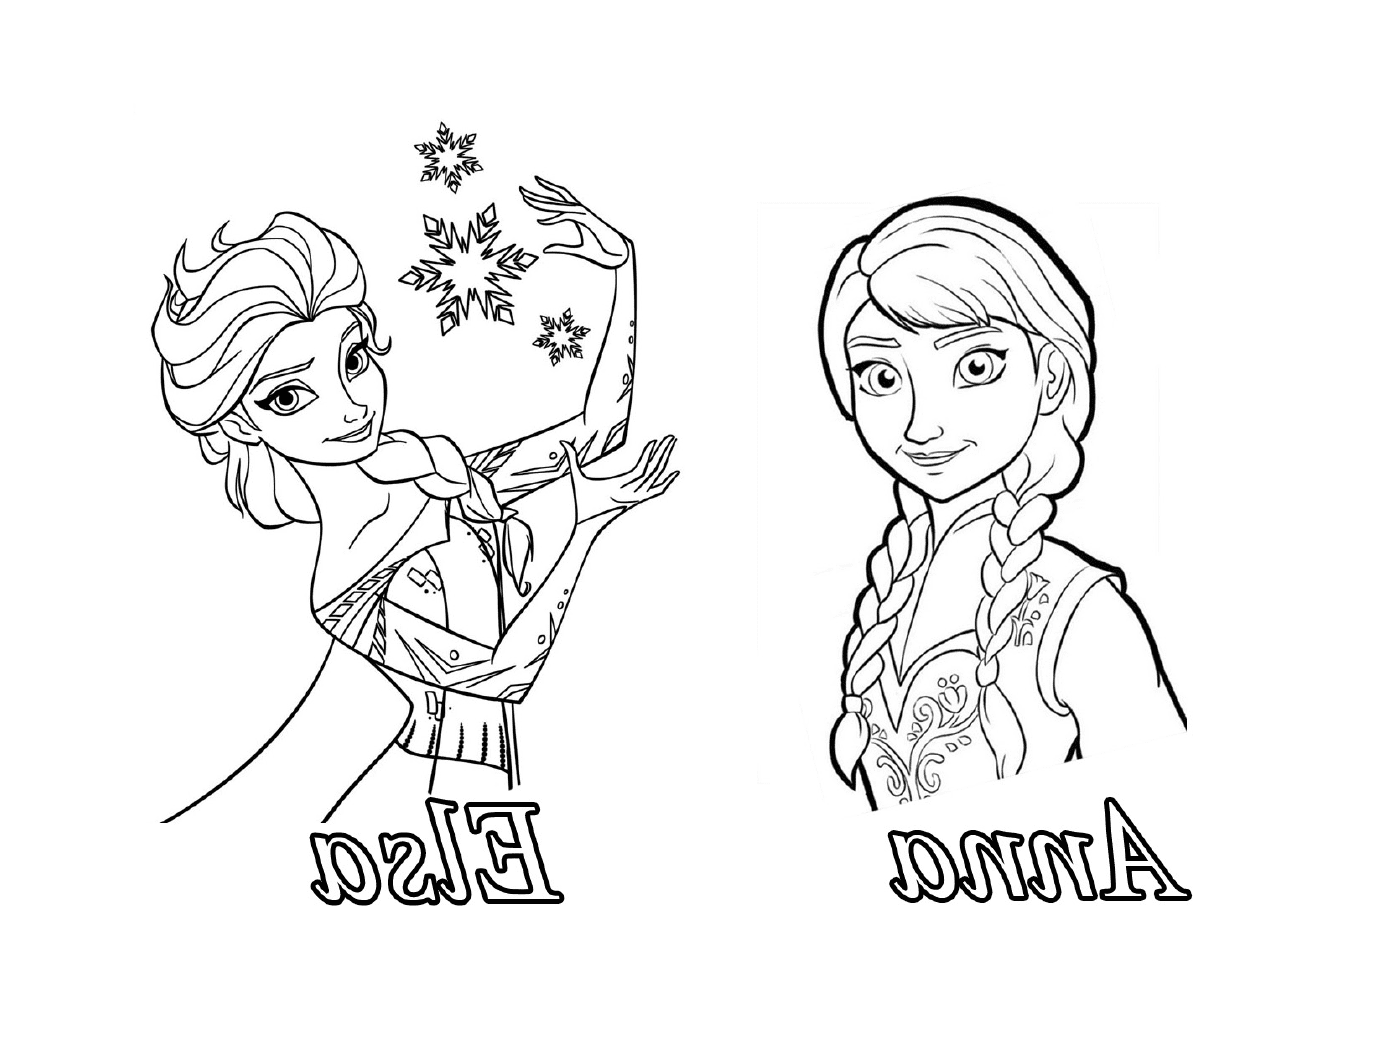  Anna ed Elsa, Regina delle Nevi, in una stanza 